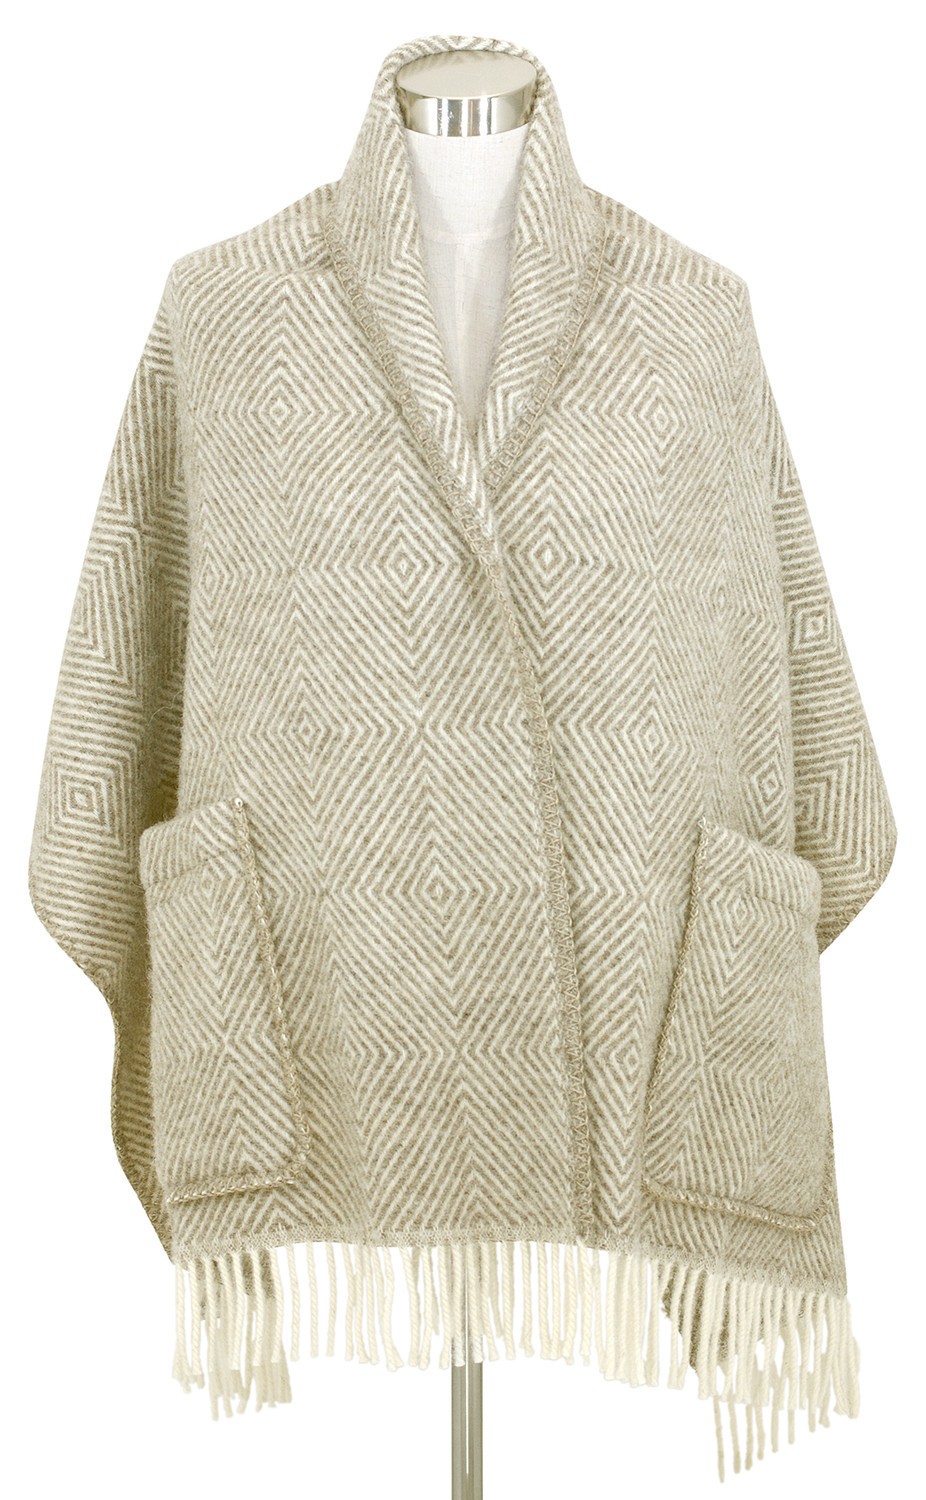 芬蘭Lapuan Kankurit MARIA 羊毛口袋披肩 (淺咖啡條紋)